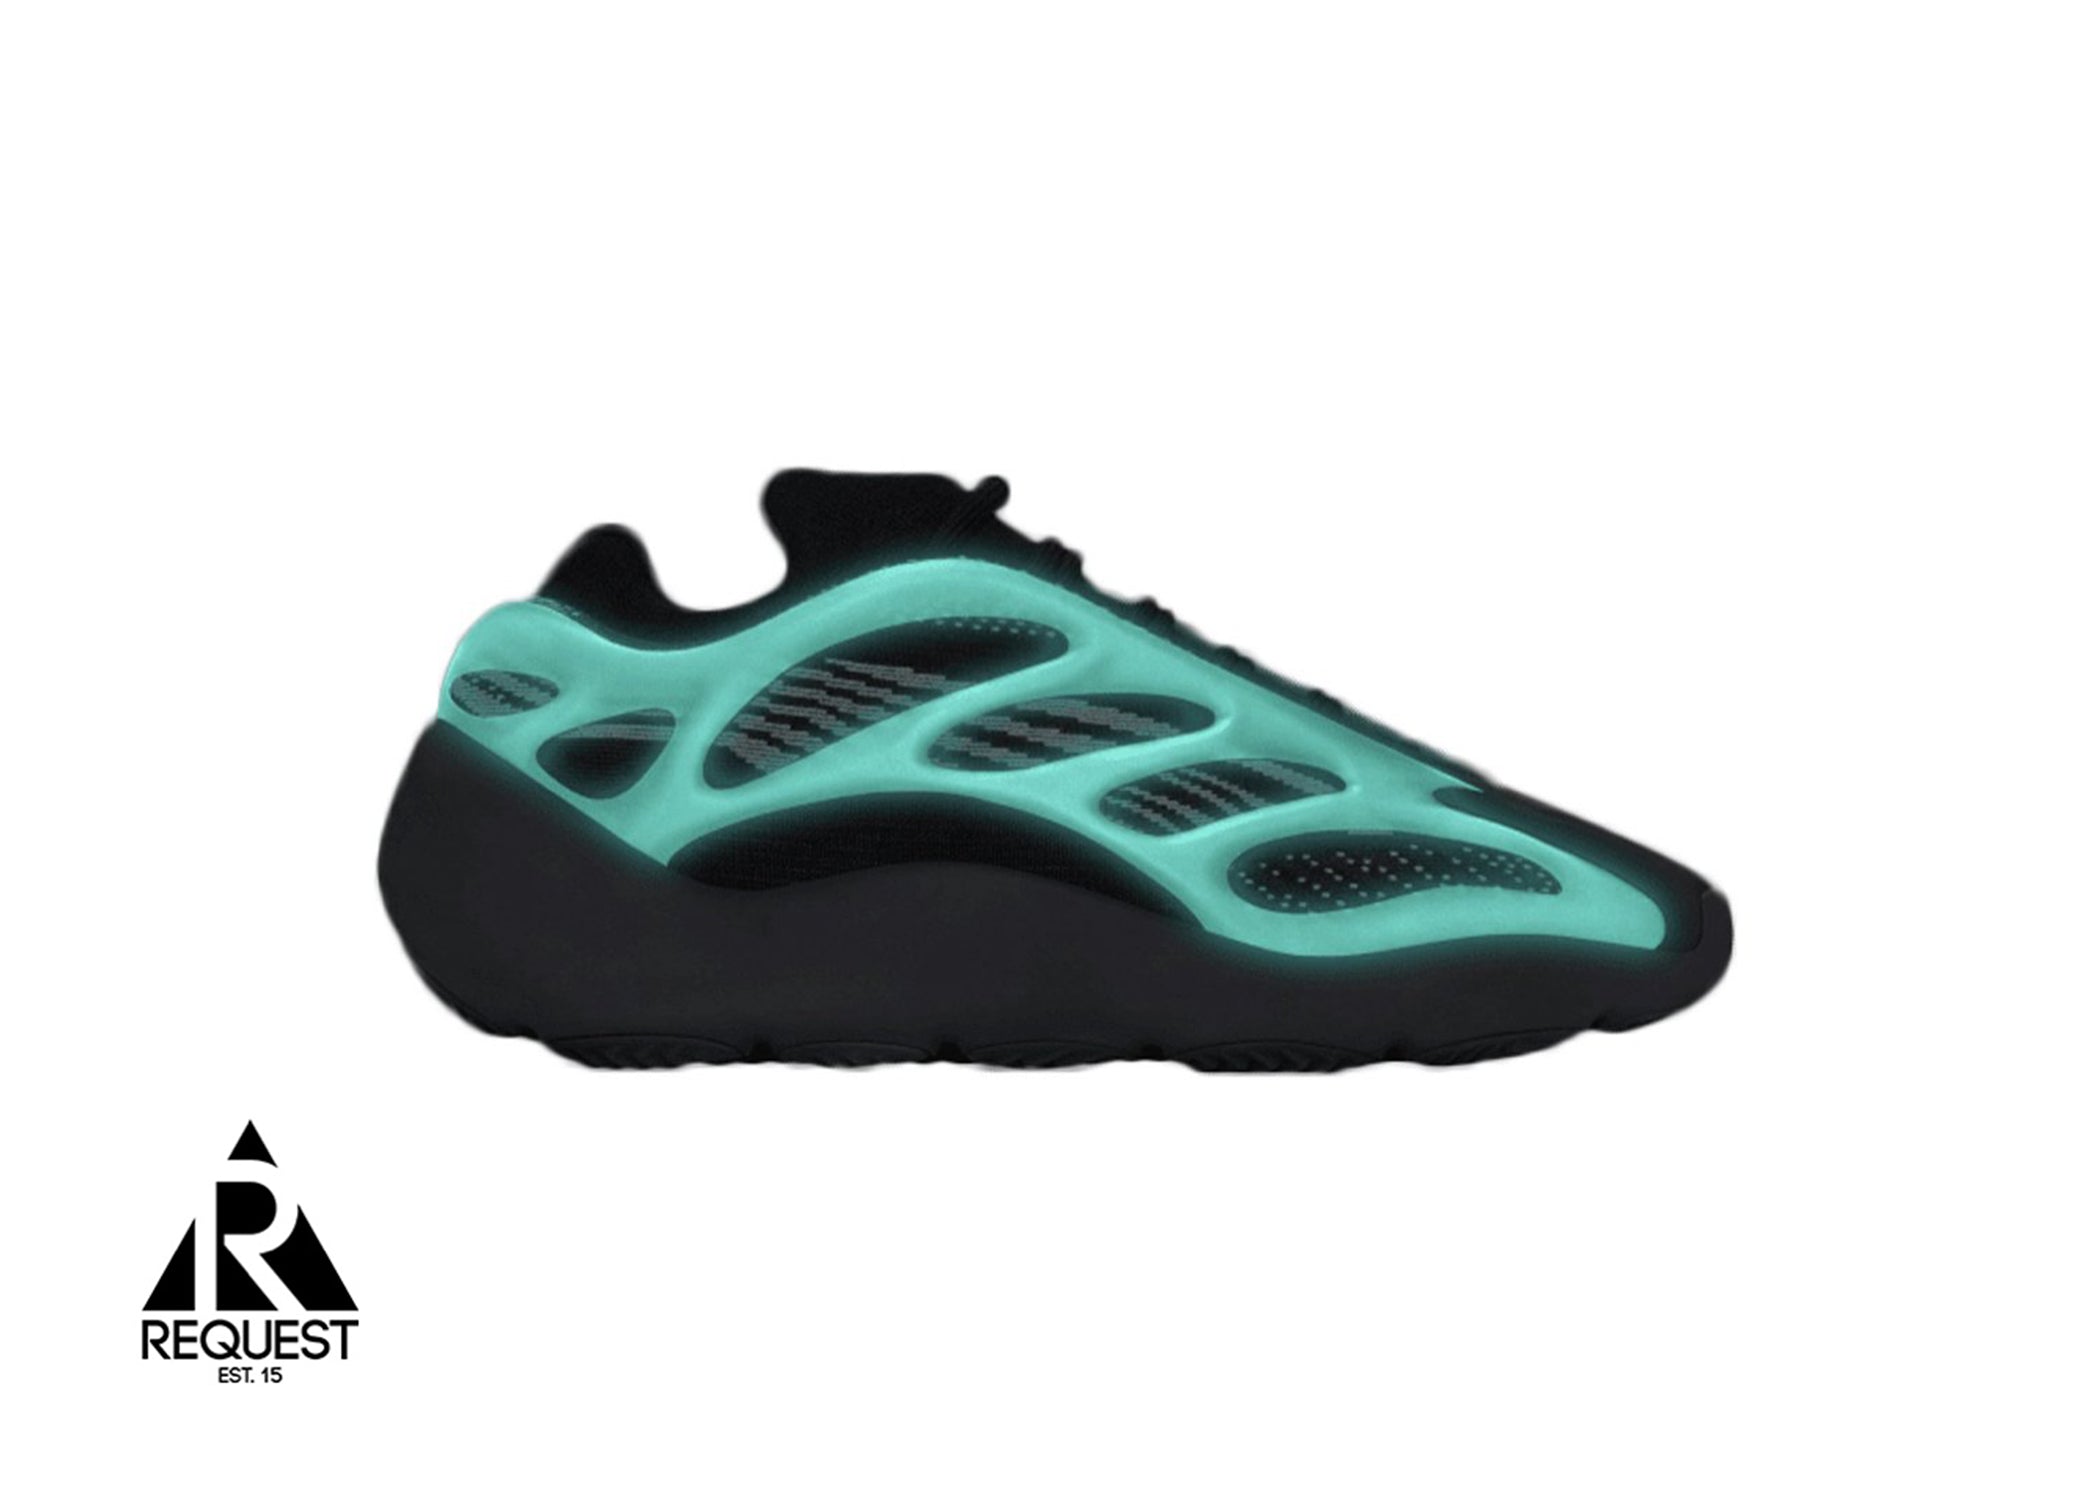 Adidas Yeezy 700 V3 “Dark Glow”